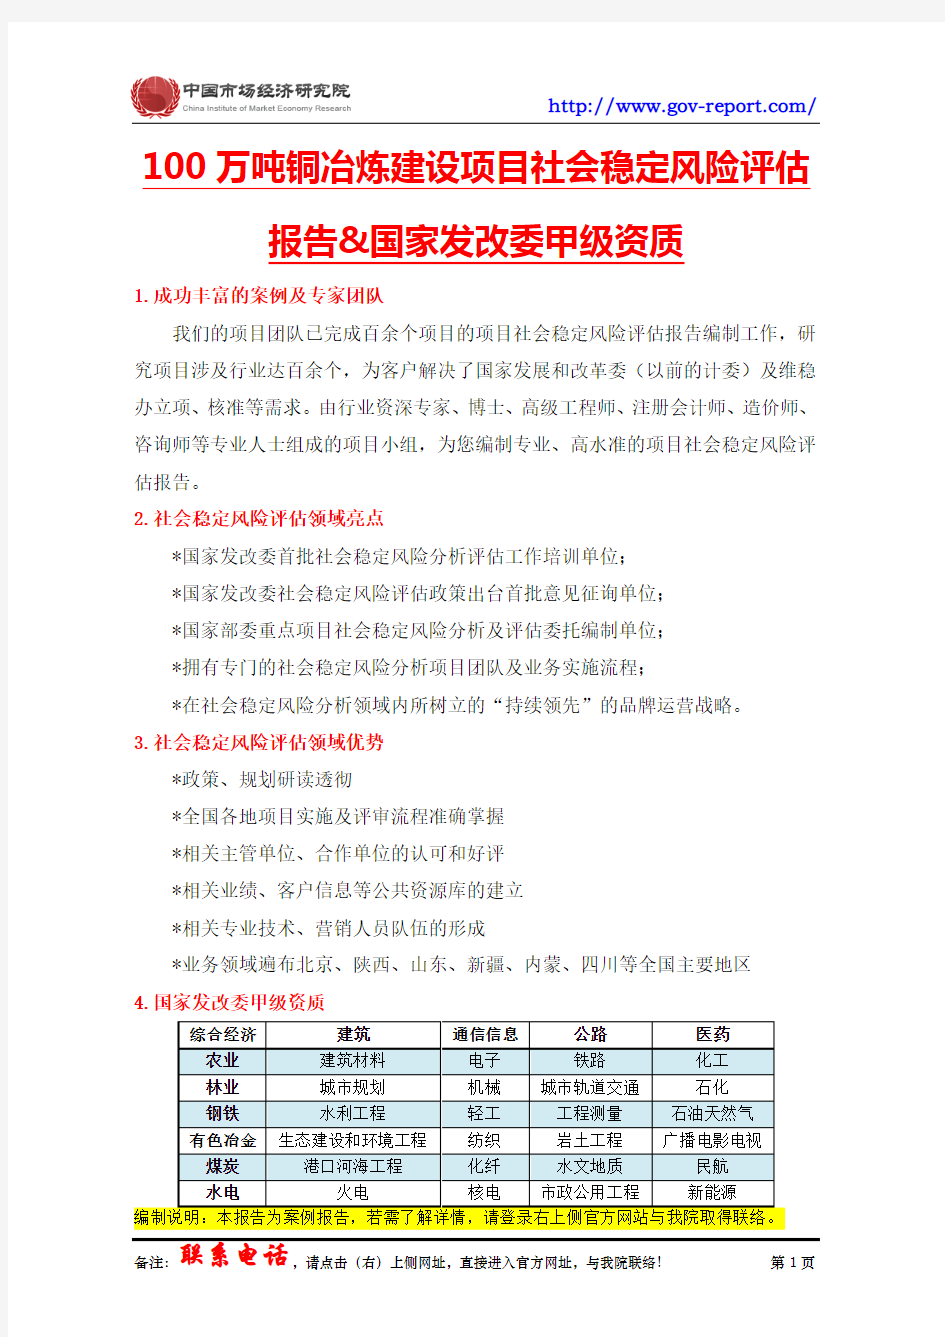 100万吨铜冶炼建设项目社会稳定风险评估报告--(中国市场经济研究院-甲级资质)